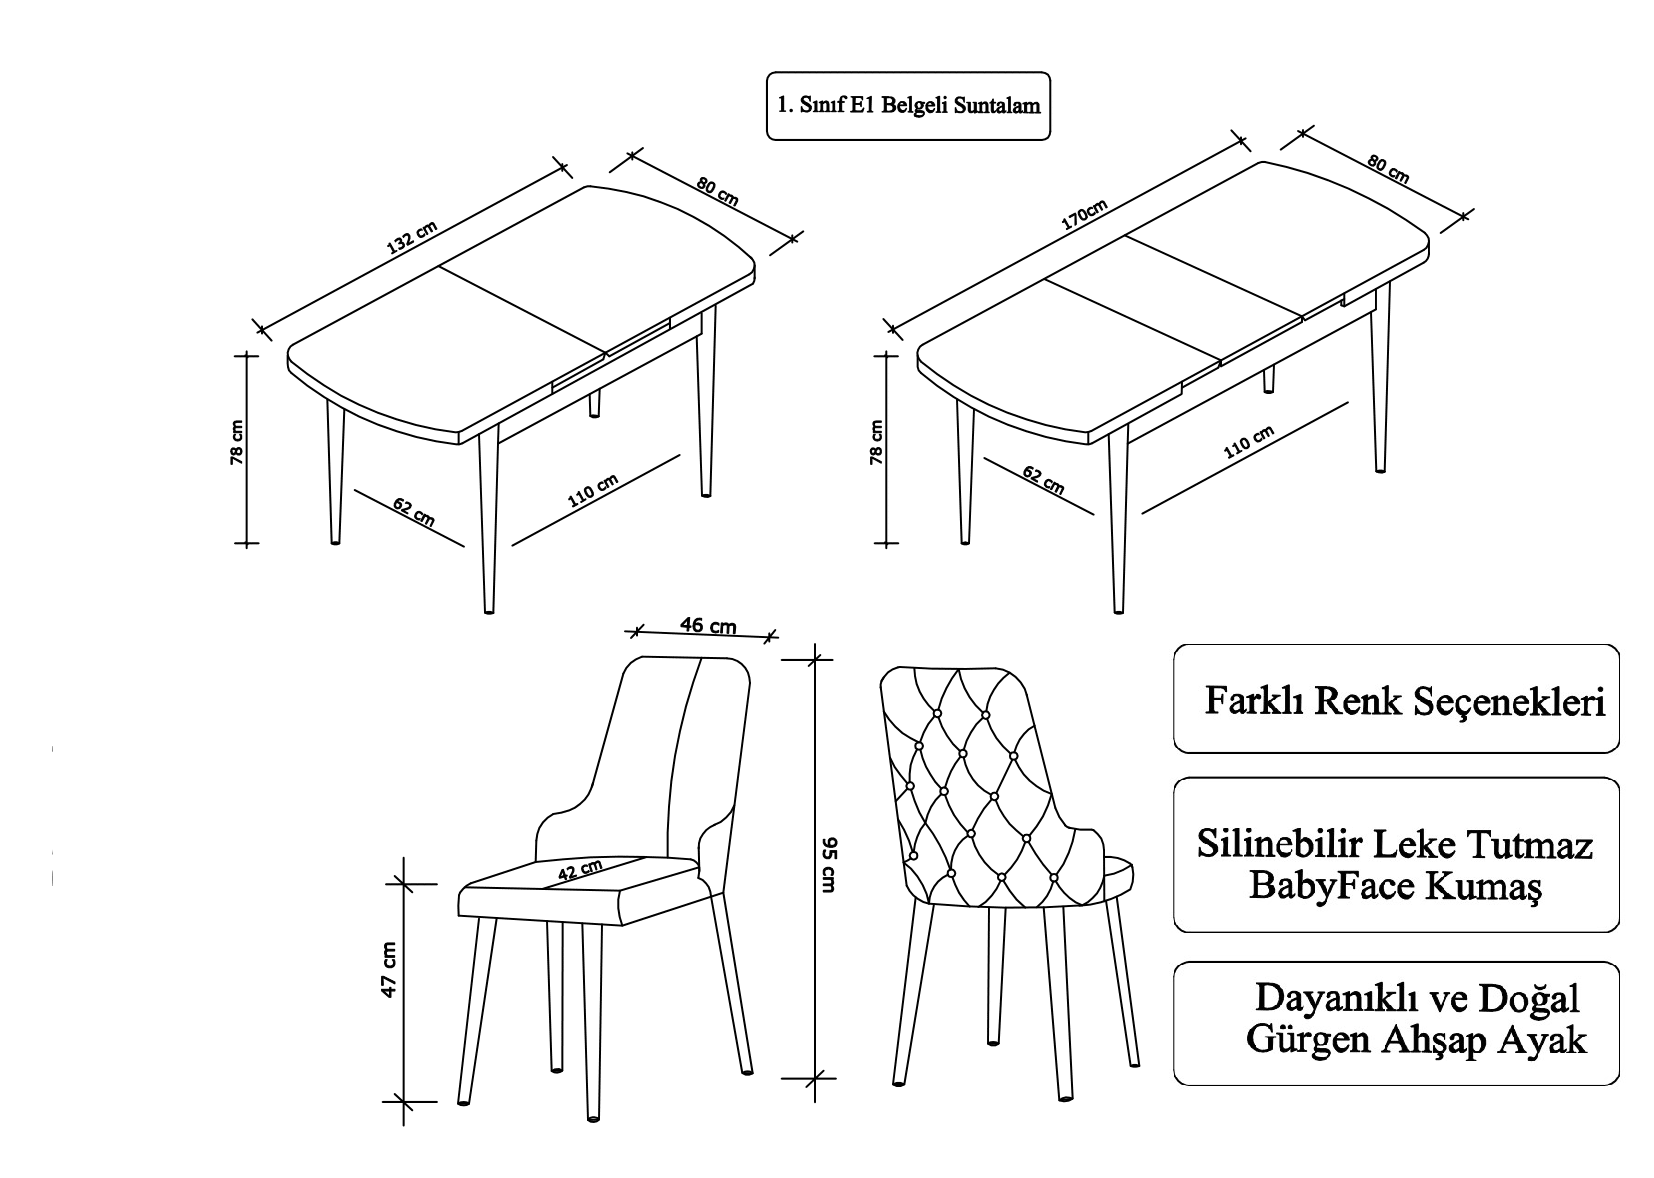 Prestij Serisi Mutfak ve Salon Masa Takımı + 6 Adet Siyah Sandalye